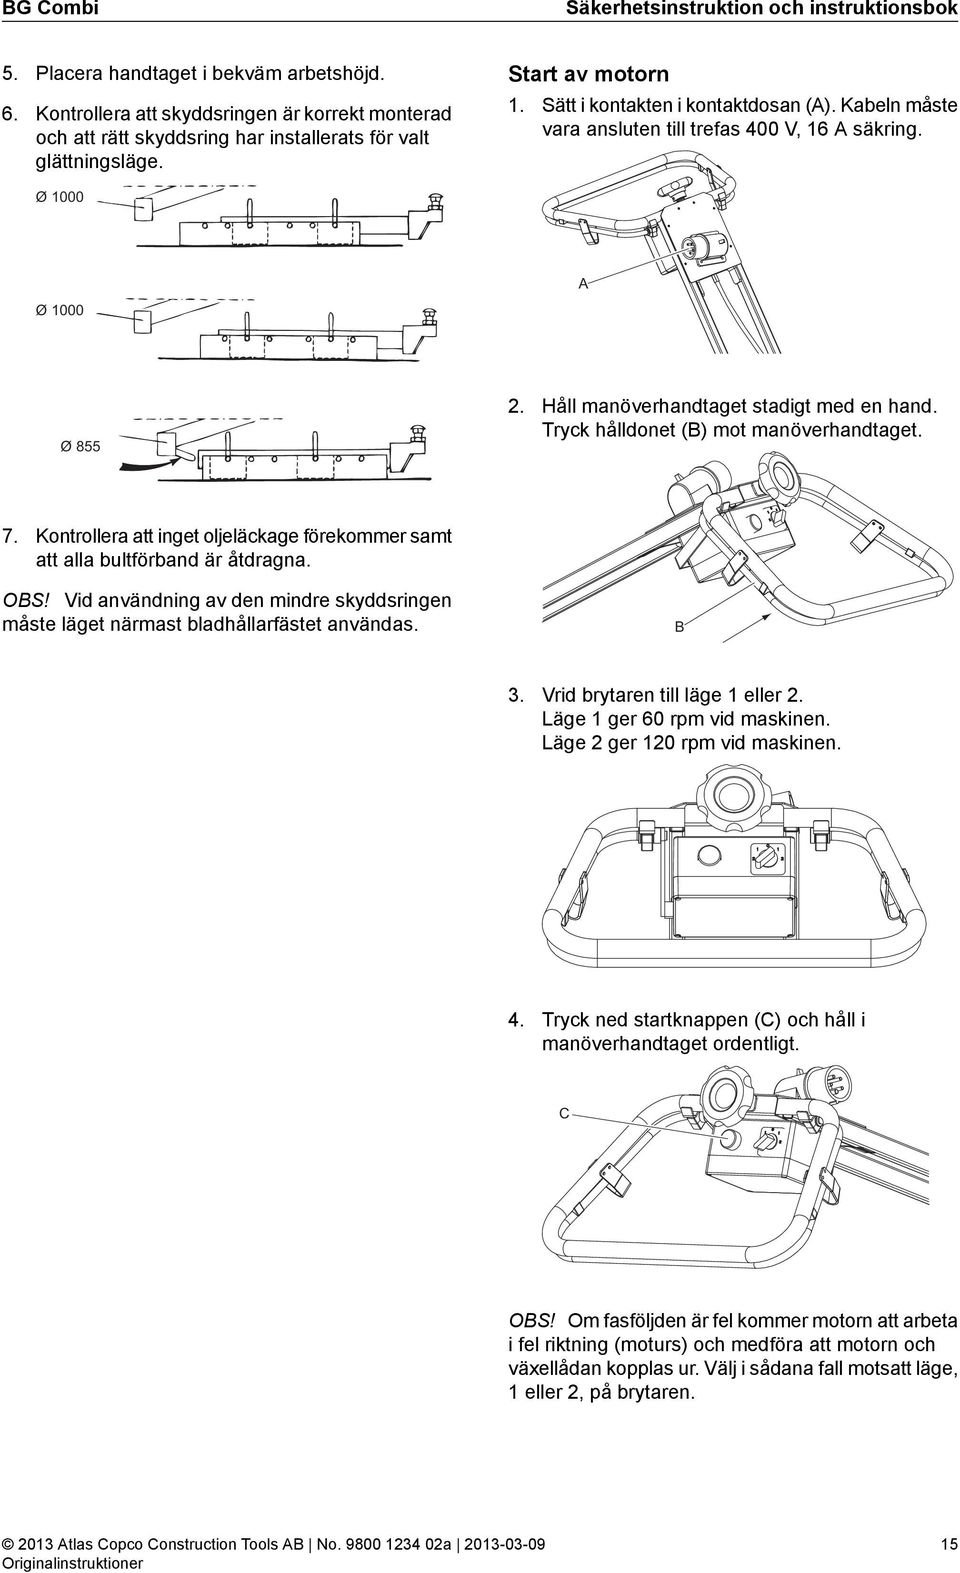 Säkerhetsinstruktion och instruktionsbok - PDF Gratis nedladdning